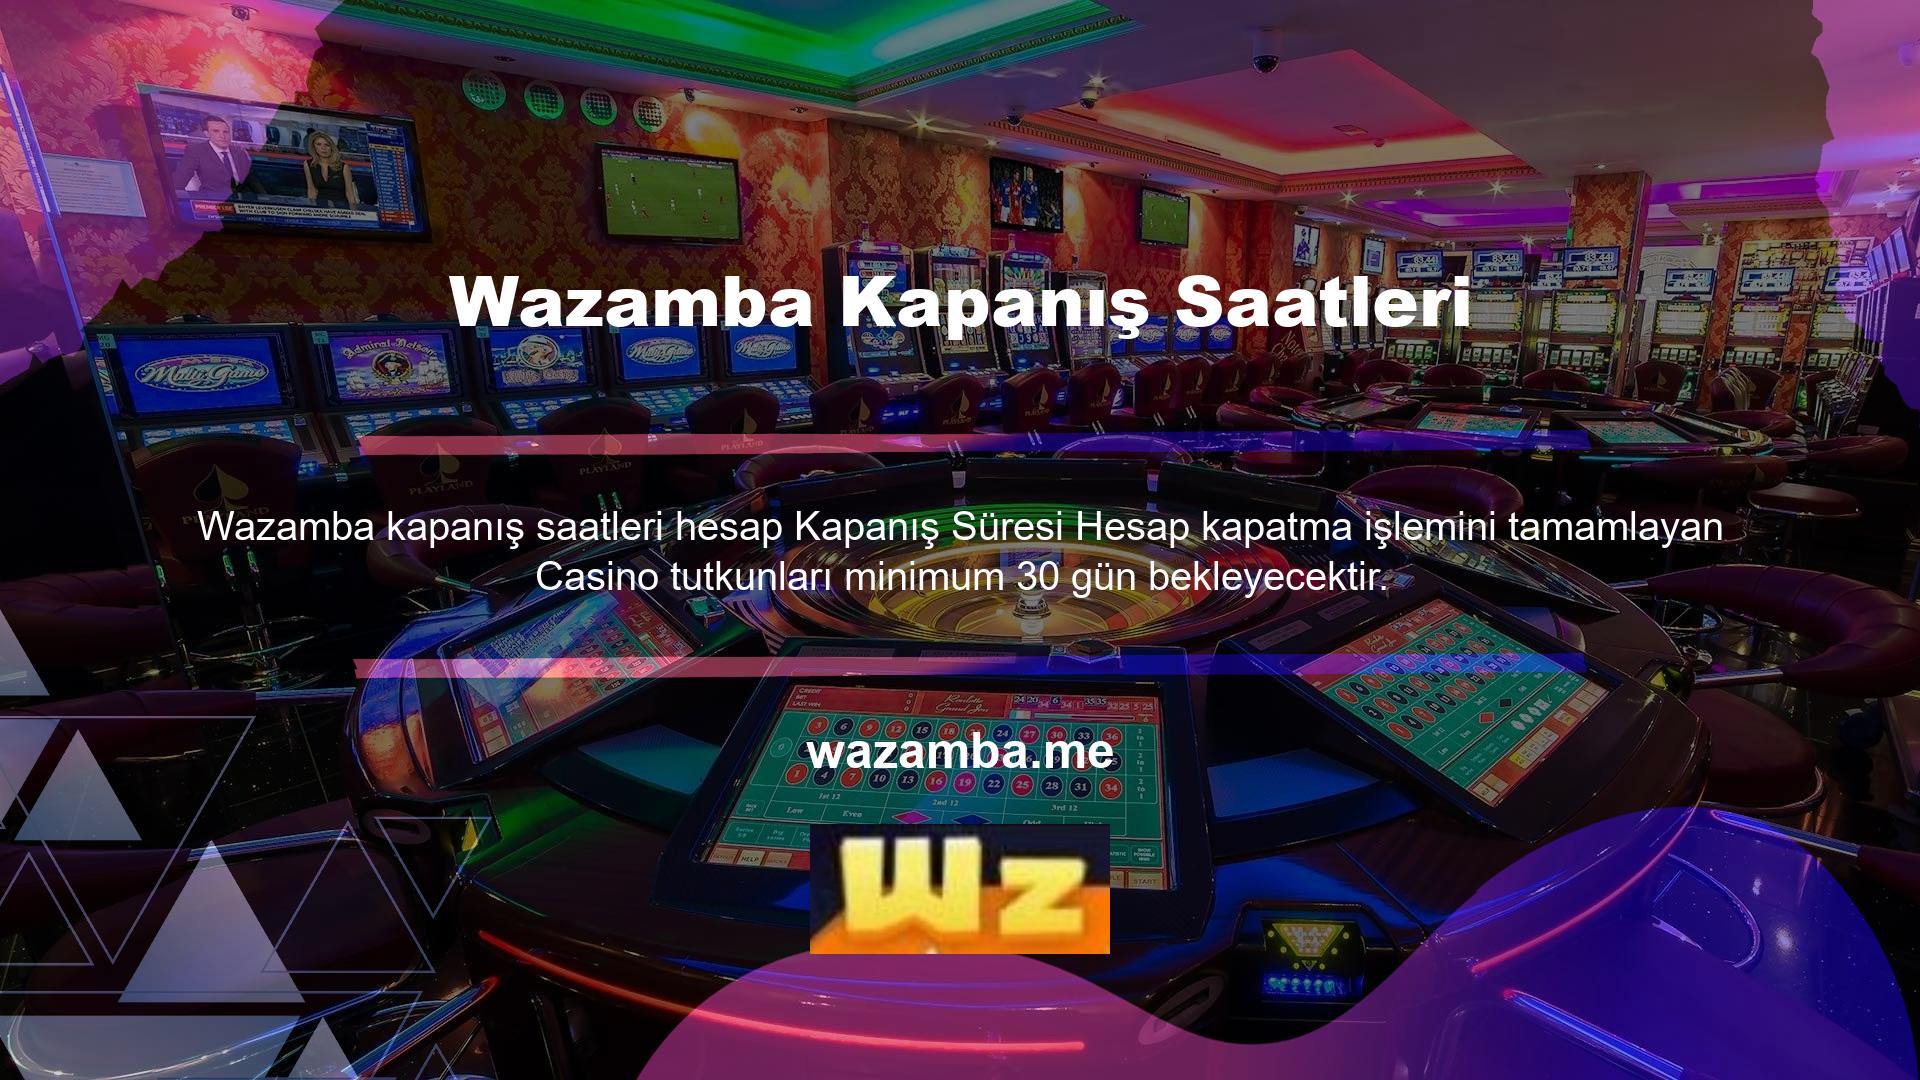 Hesap kapatma sebebi casino severlerin Wazamba casino sitelerinde vakit geçirmeleri için 30 gündür